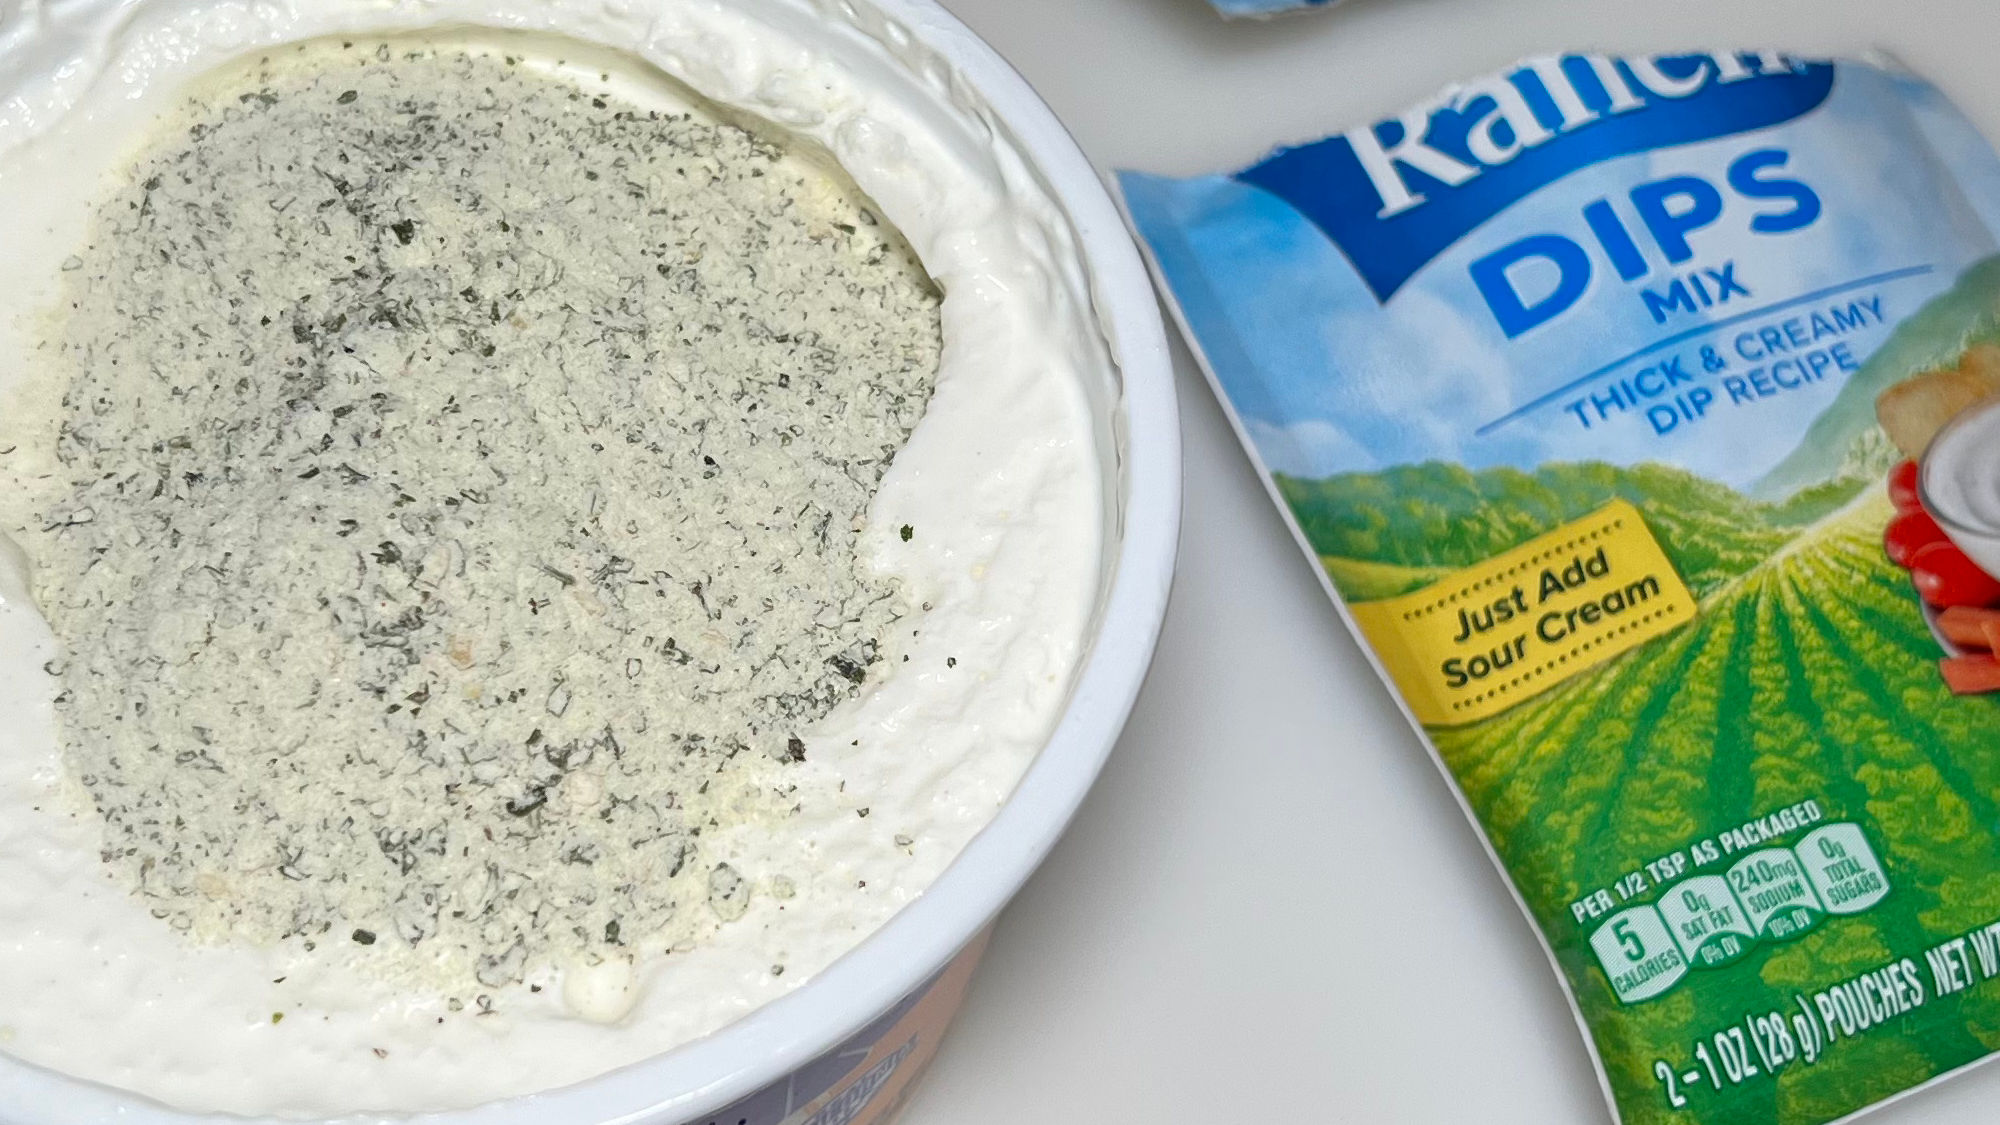 Hidden Valley Ranch Dip Sour Cream